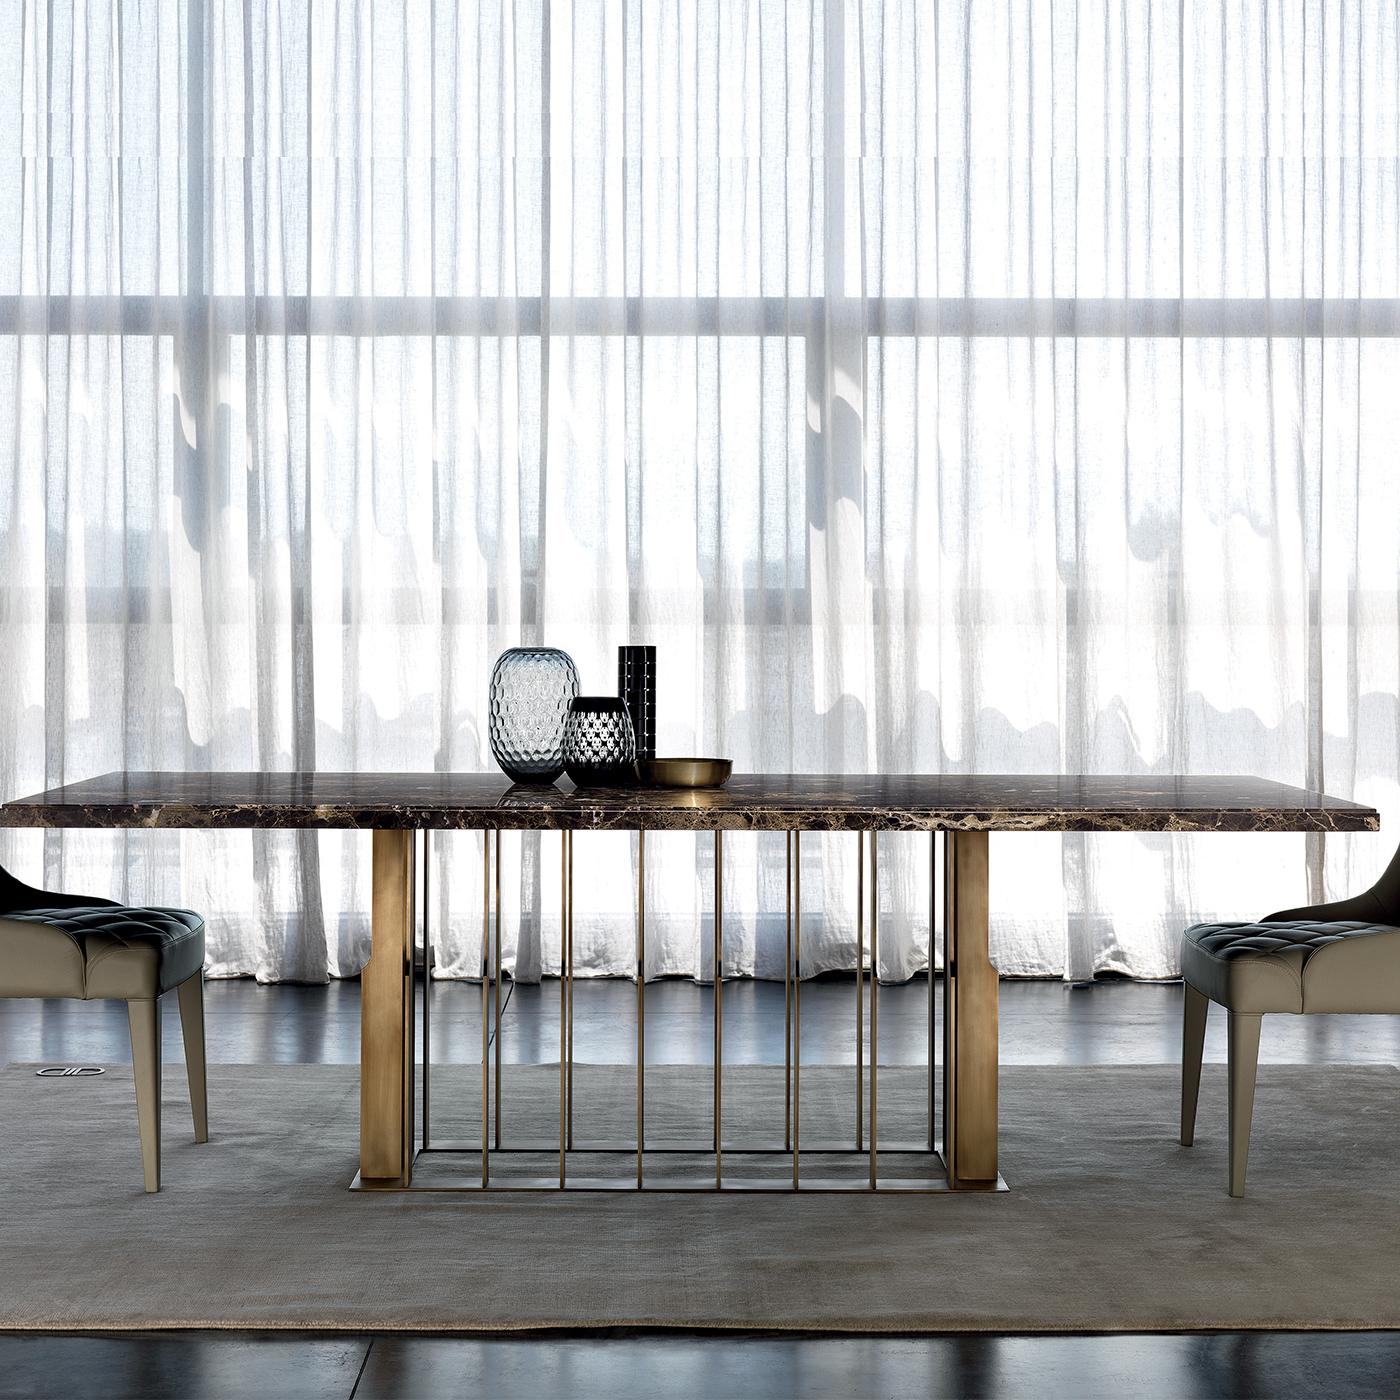 Cette étonnante table de salle à manger se définit par des formes épurées et une esthétique élégante. La structure métallique rectangulaire, en acier inoxydable avec finition en laiton poli, est composée d'éléments verticaux aux bords irréguliers